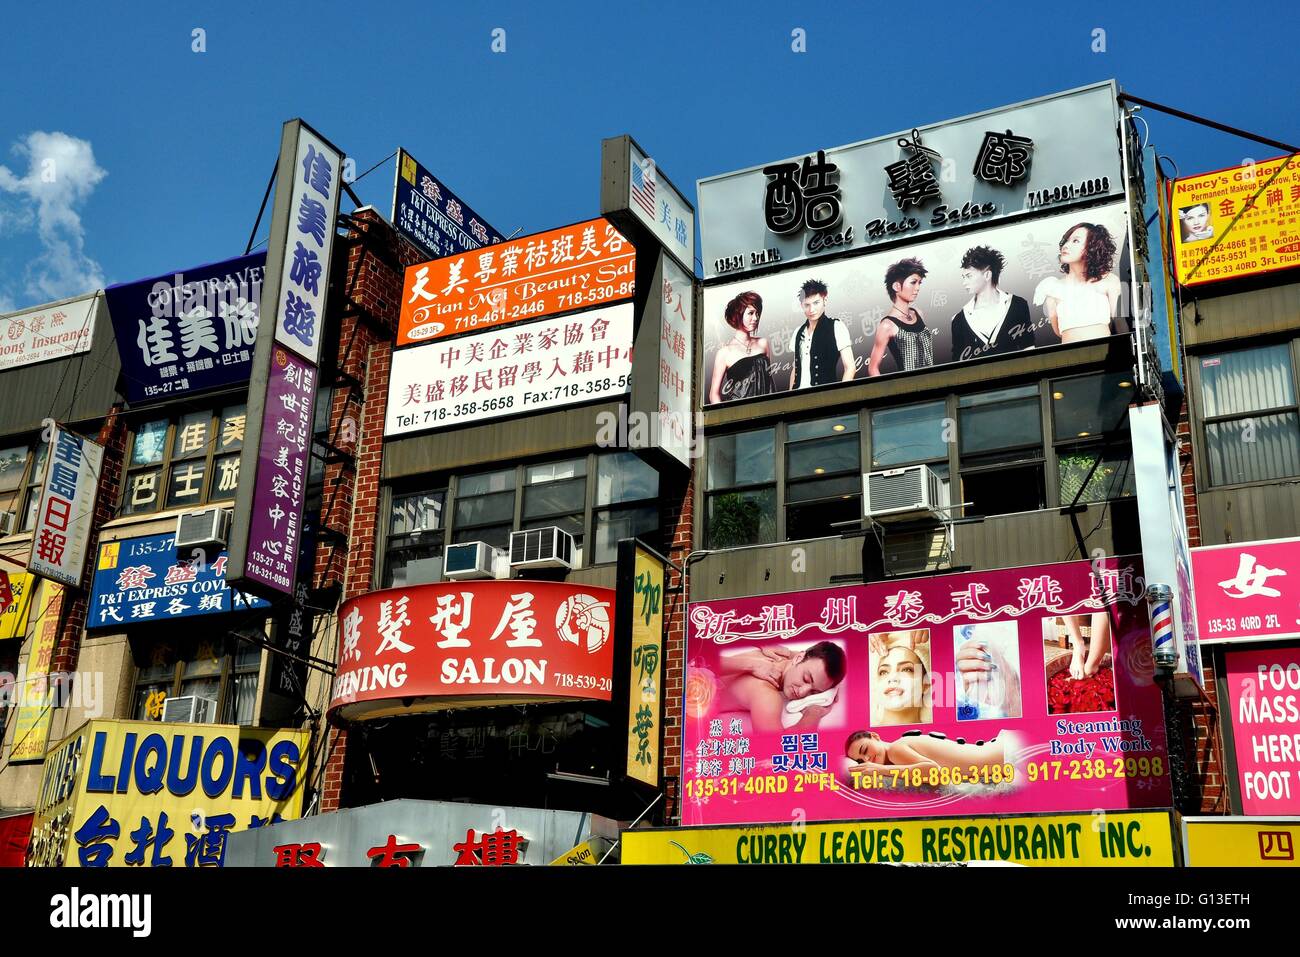 NYC: Bunte Zeichen in chinesischen Schriftzeichen und Englisch Abdeckung Schaufenster in New Yorks größte Chinatown befindet sich in Vlissingen Stockfoto